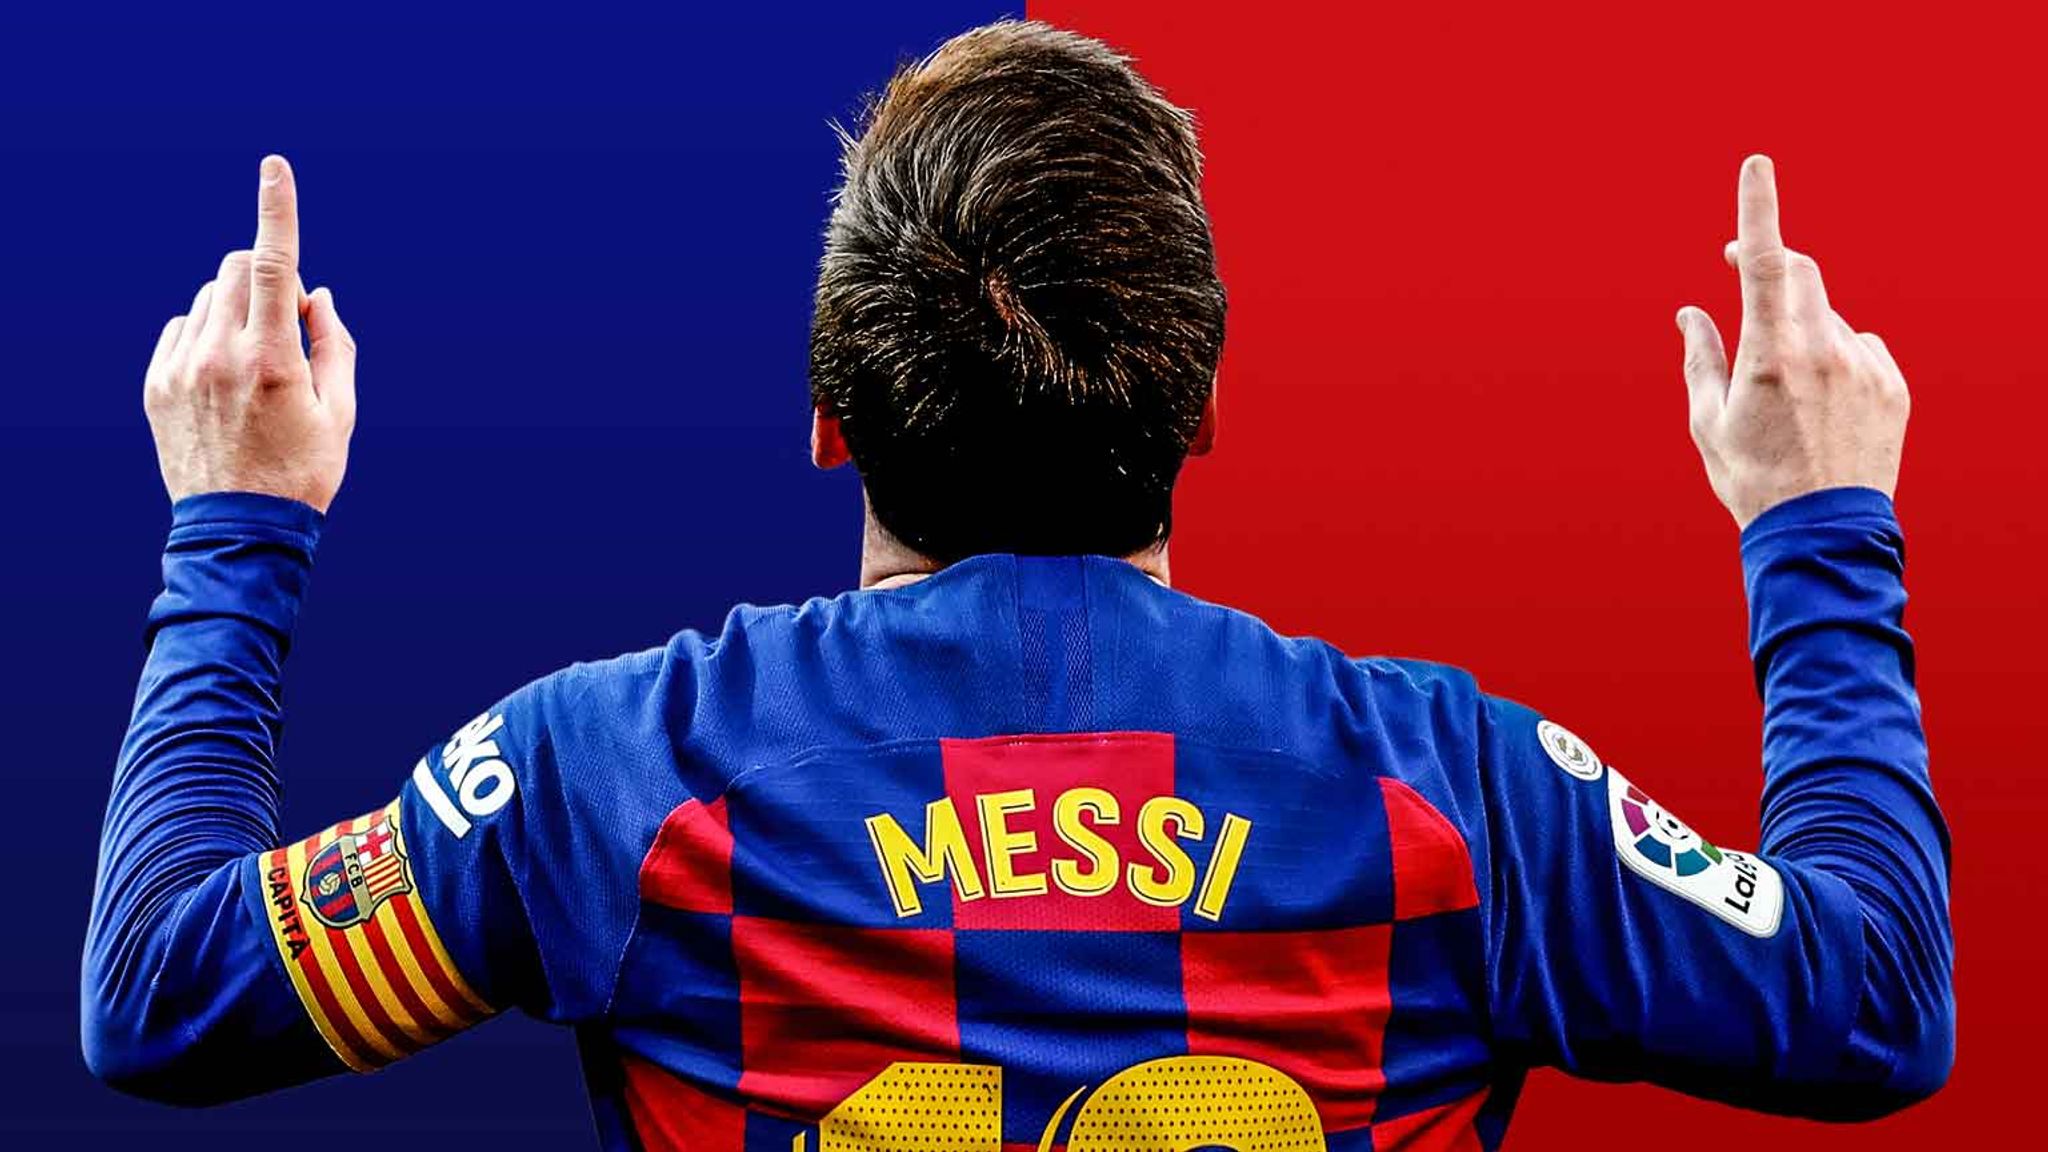 Chiêm ngưỡng Messi 360 đầy mê hoặc, bạn sẽ thấy Messi chơi bóng với động tác thượng thừa trong 360 độ. Bạn muốn hòa mình vào không gian bóng đá của Messi? Hãy trải nghiệm và khám phá ngay hình ảnh này!